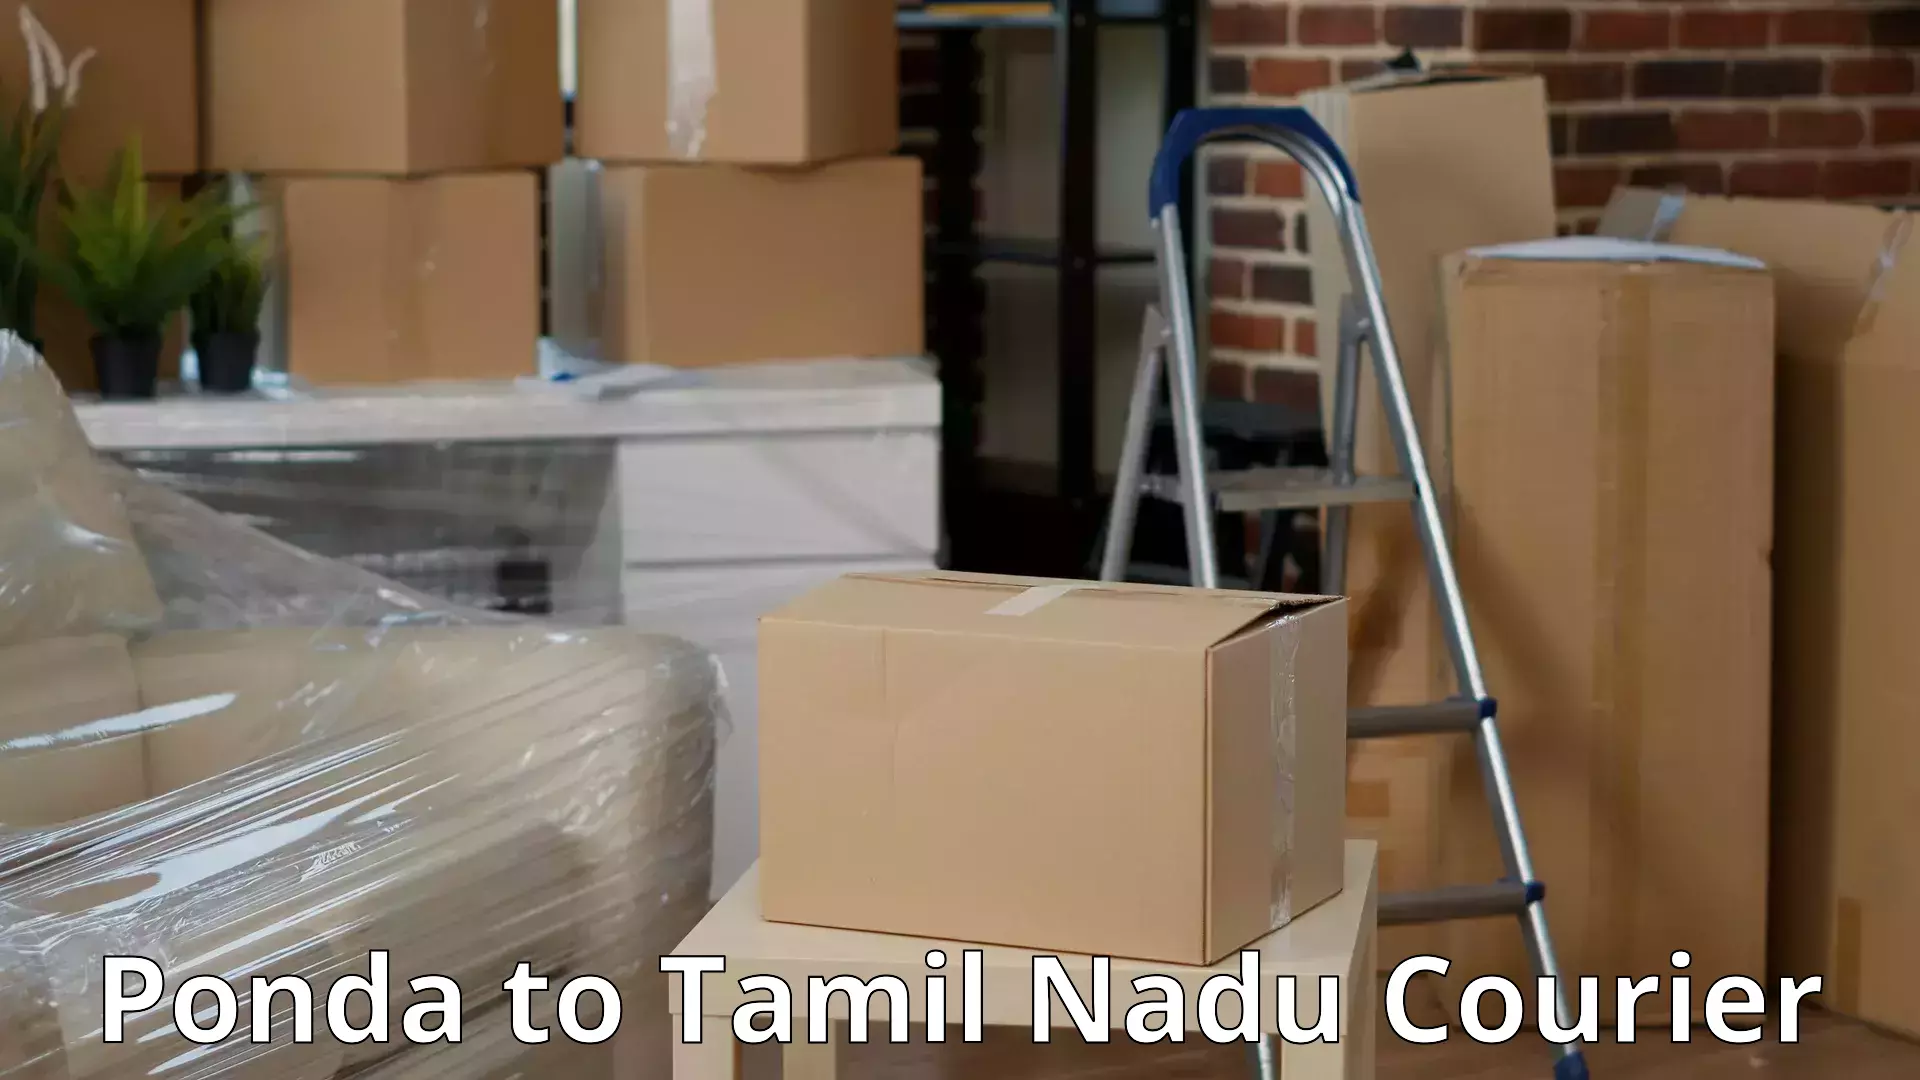 Household goods transport service Ponda to Thiruvadanai